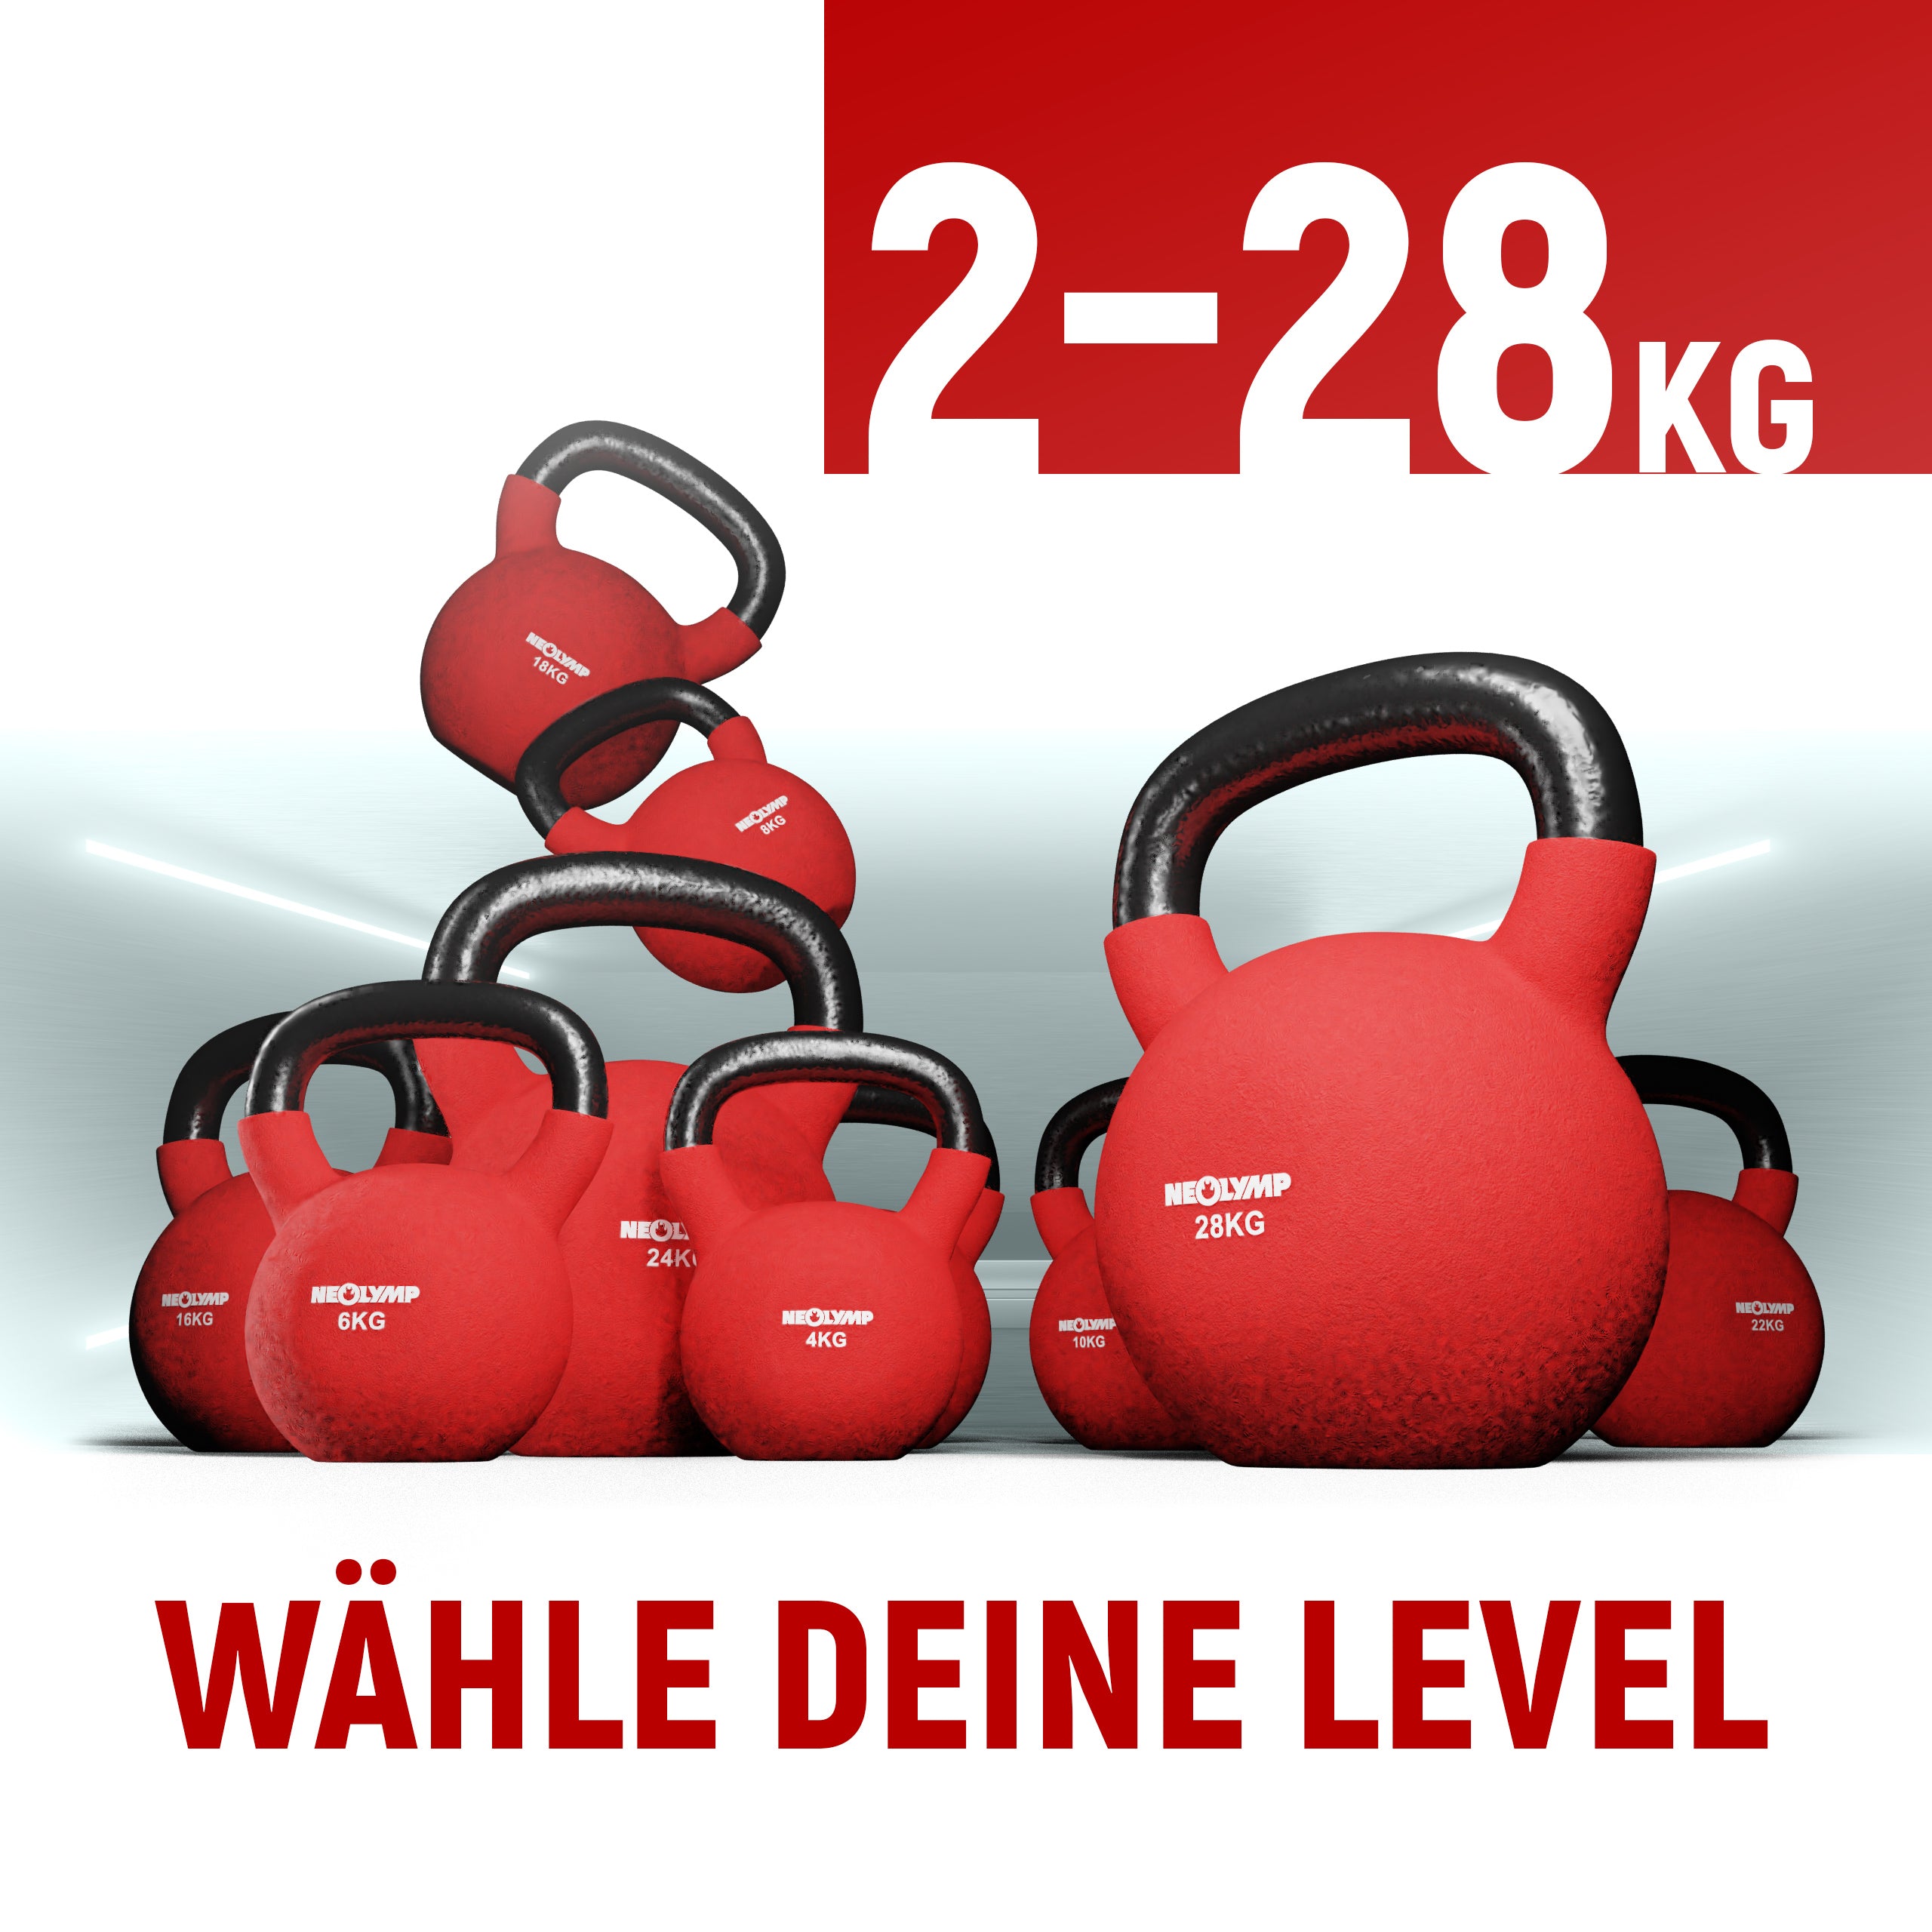 Kettlebell 2 - 28kg (red)